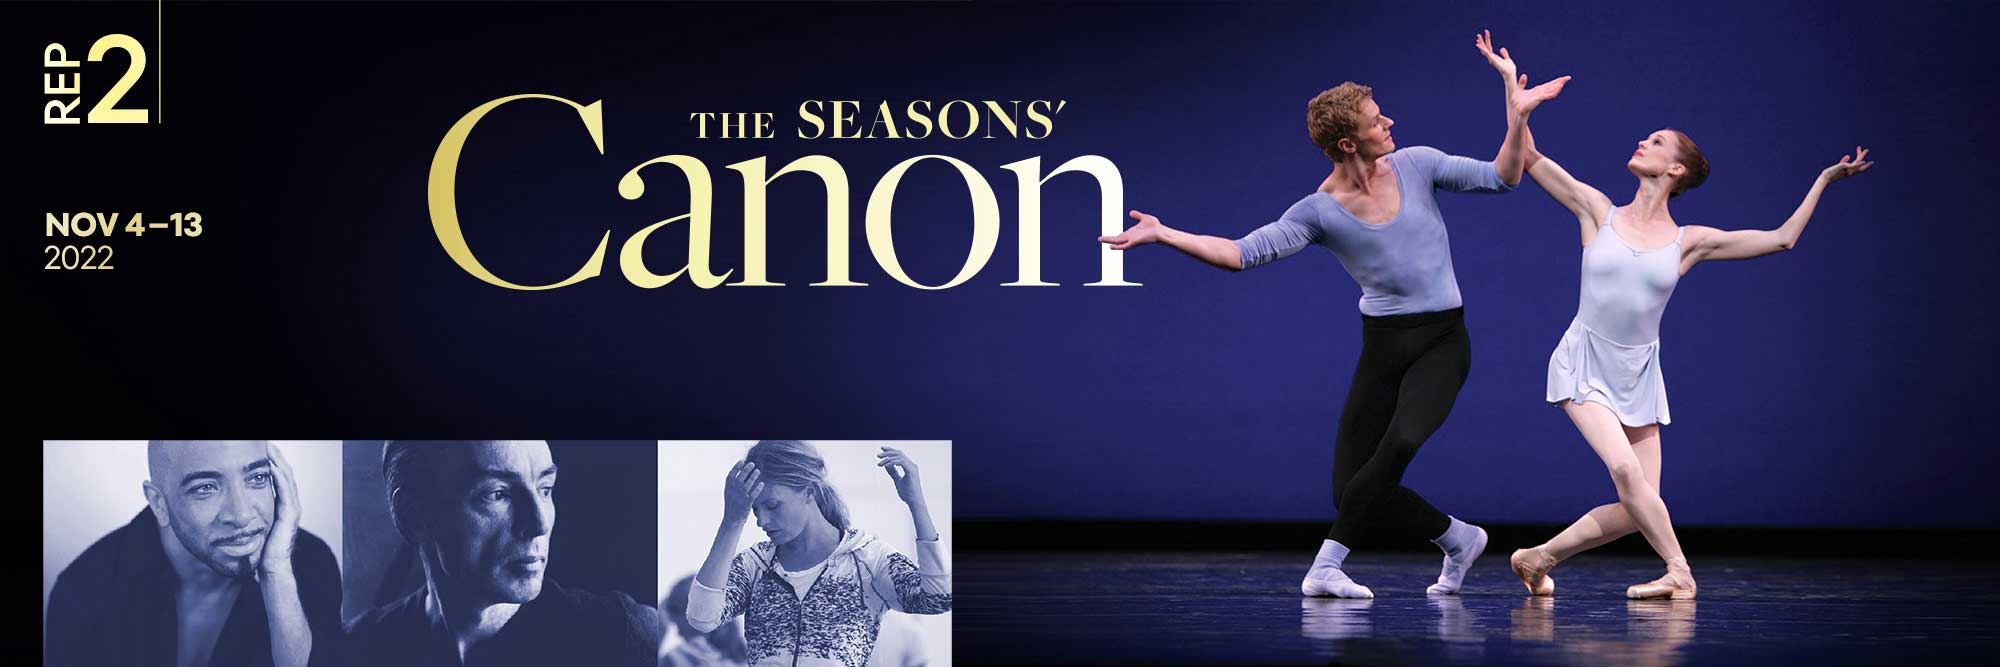 Rep 2: The Seasons' Canon. November 4-13, 2022.